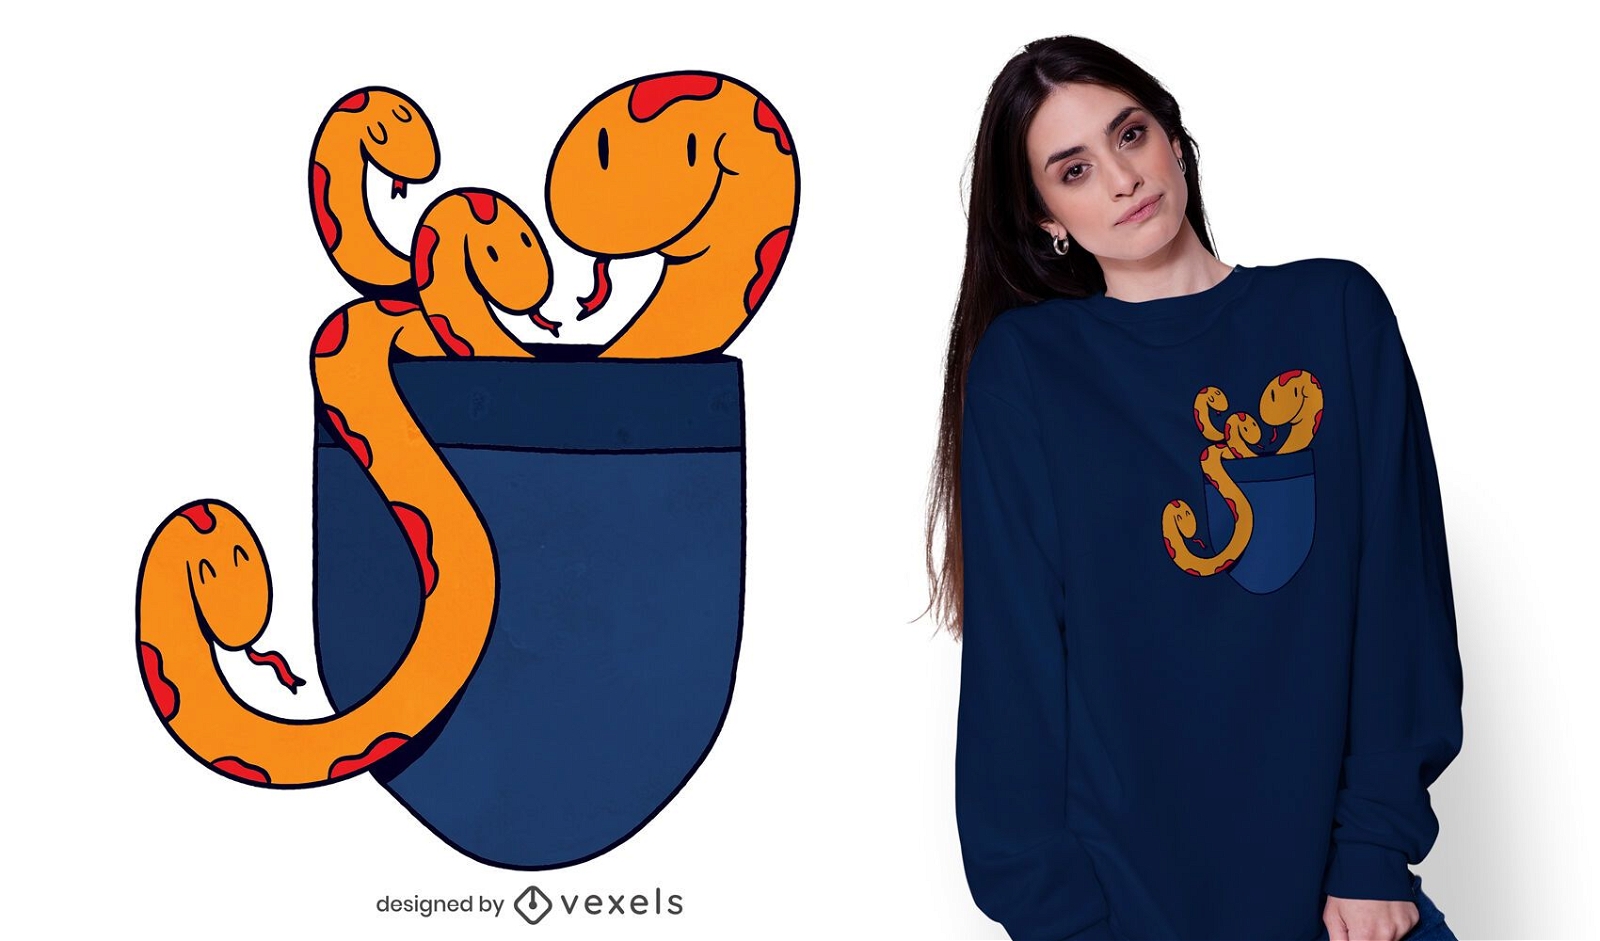 Snake pocket t-shirt design